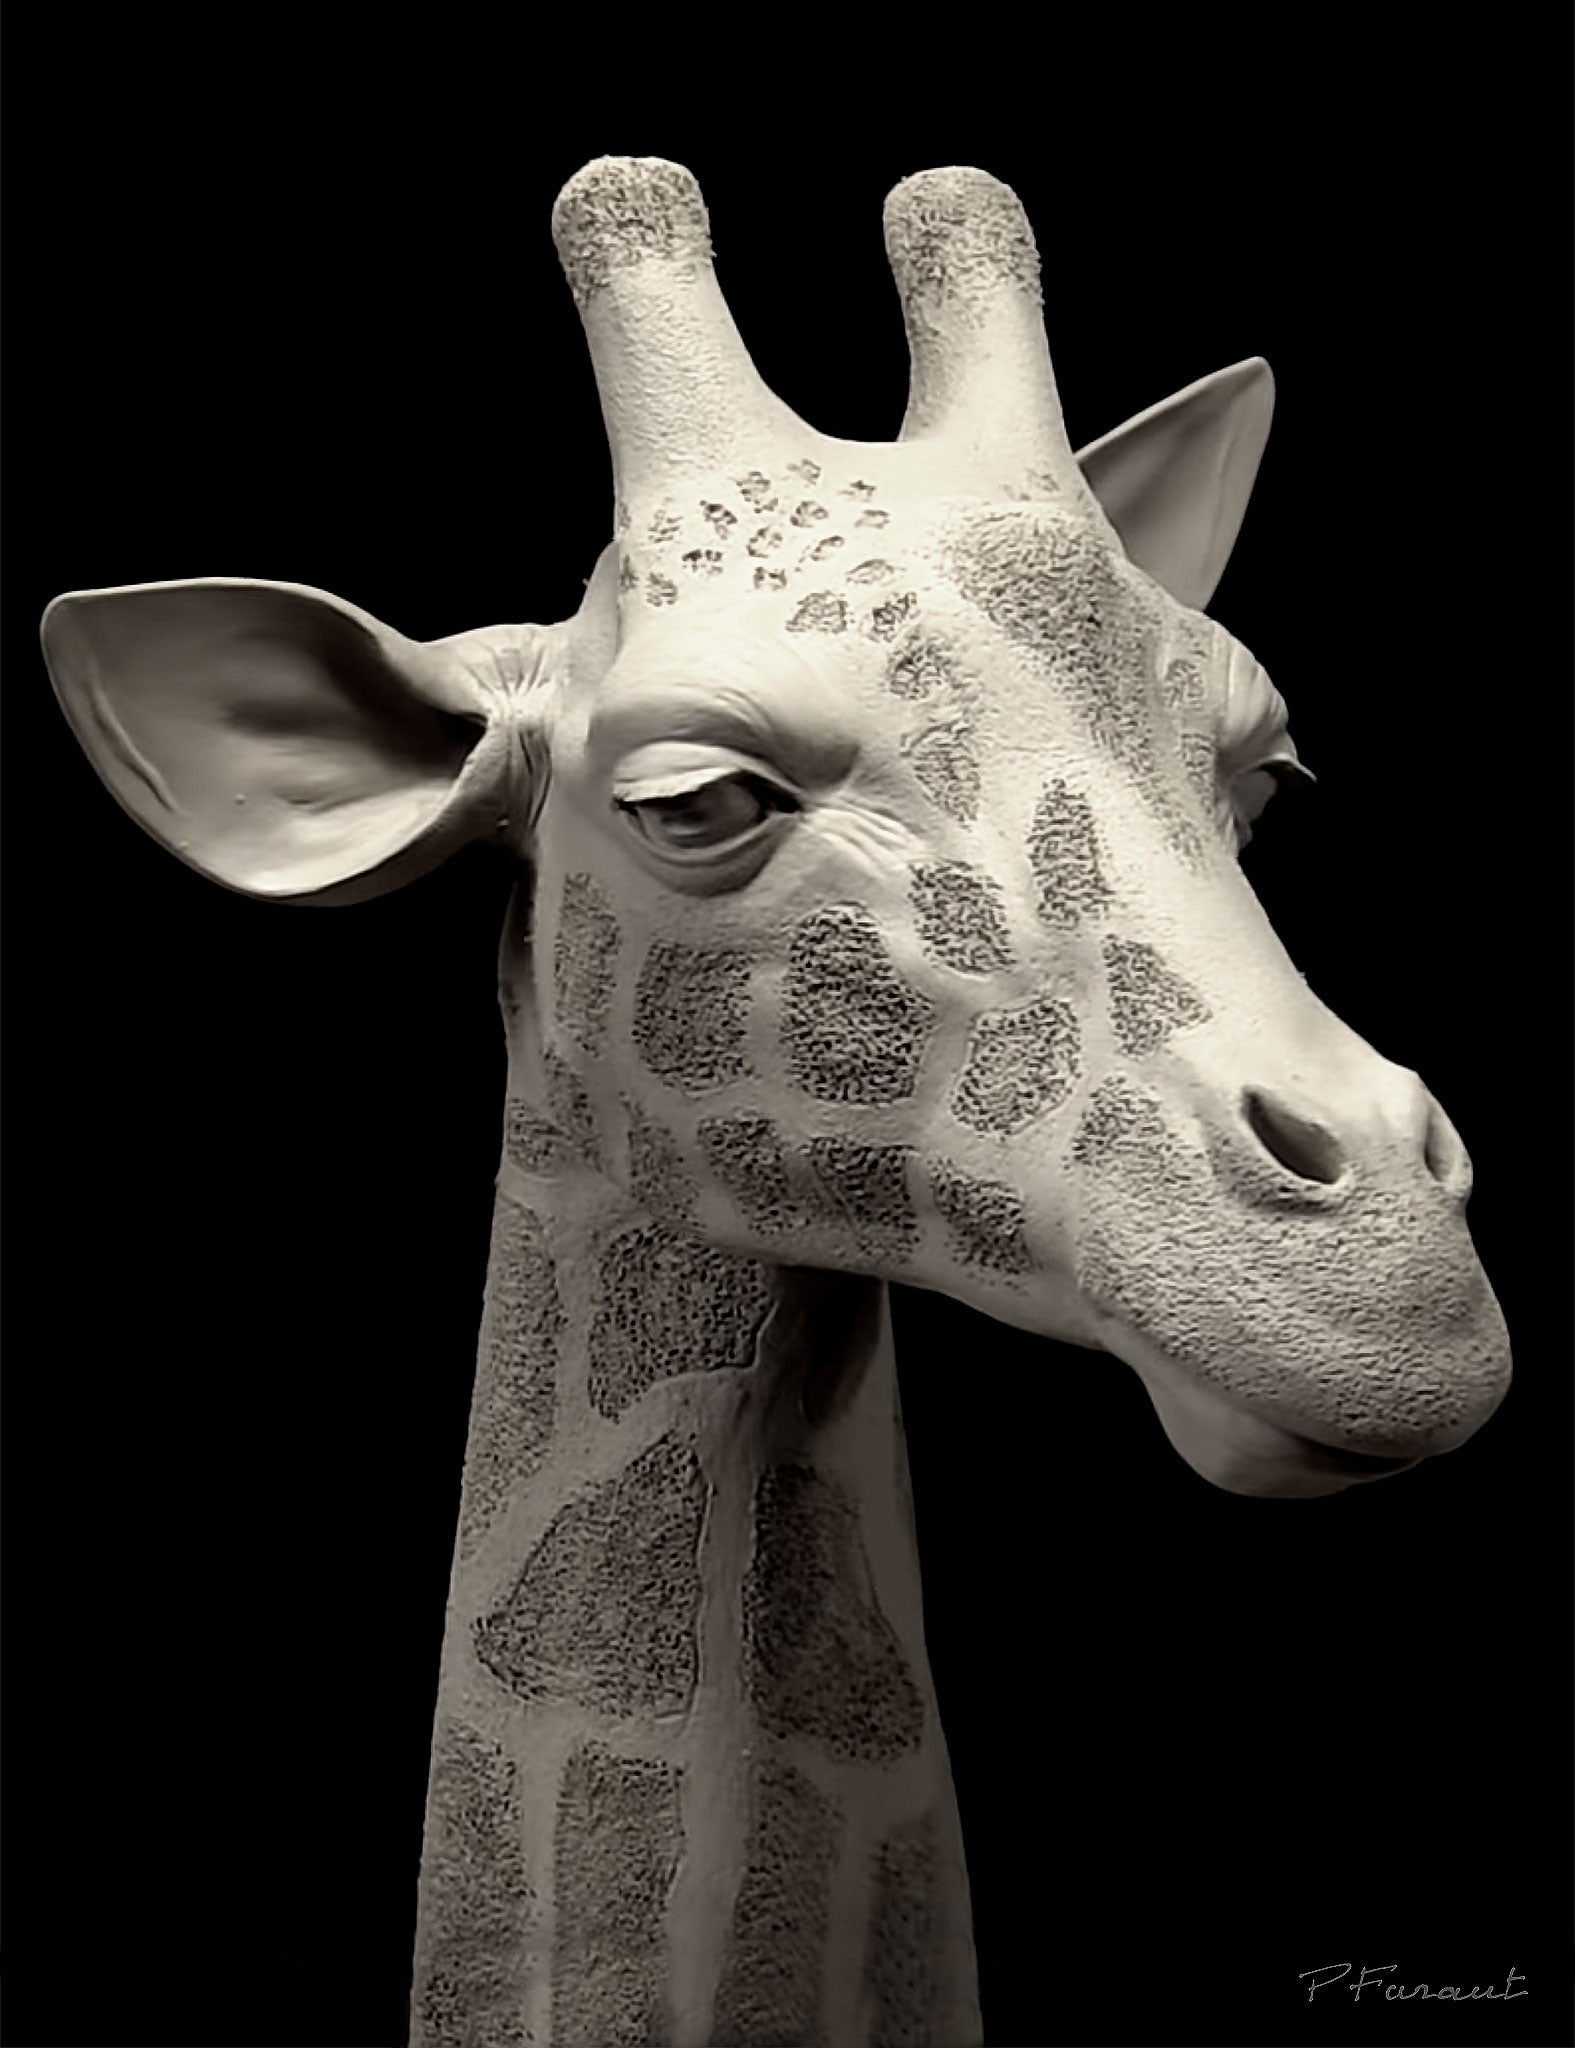 Giraffe head sculpture by Philippe Faraut